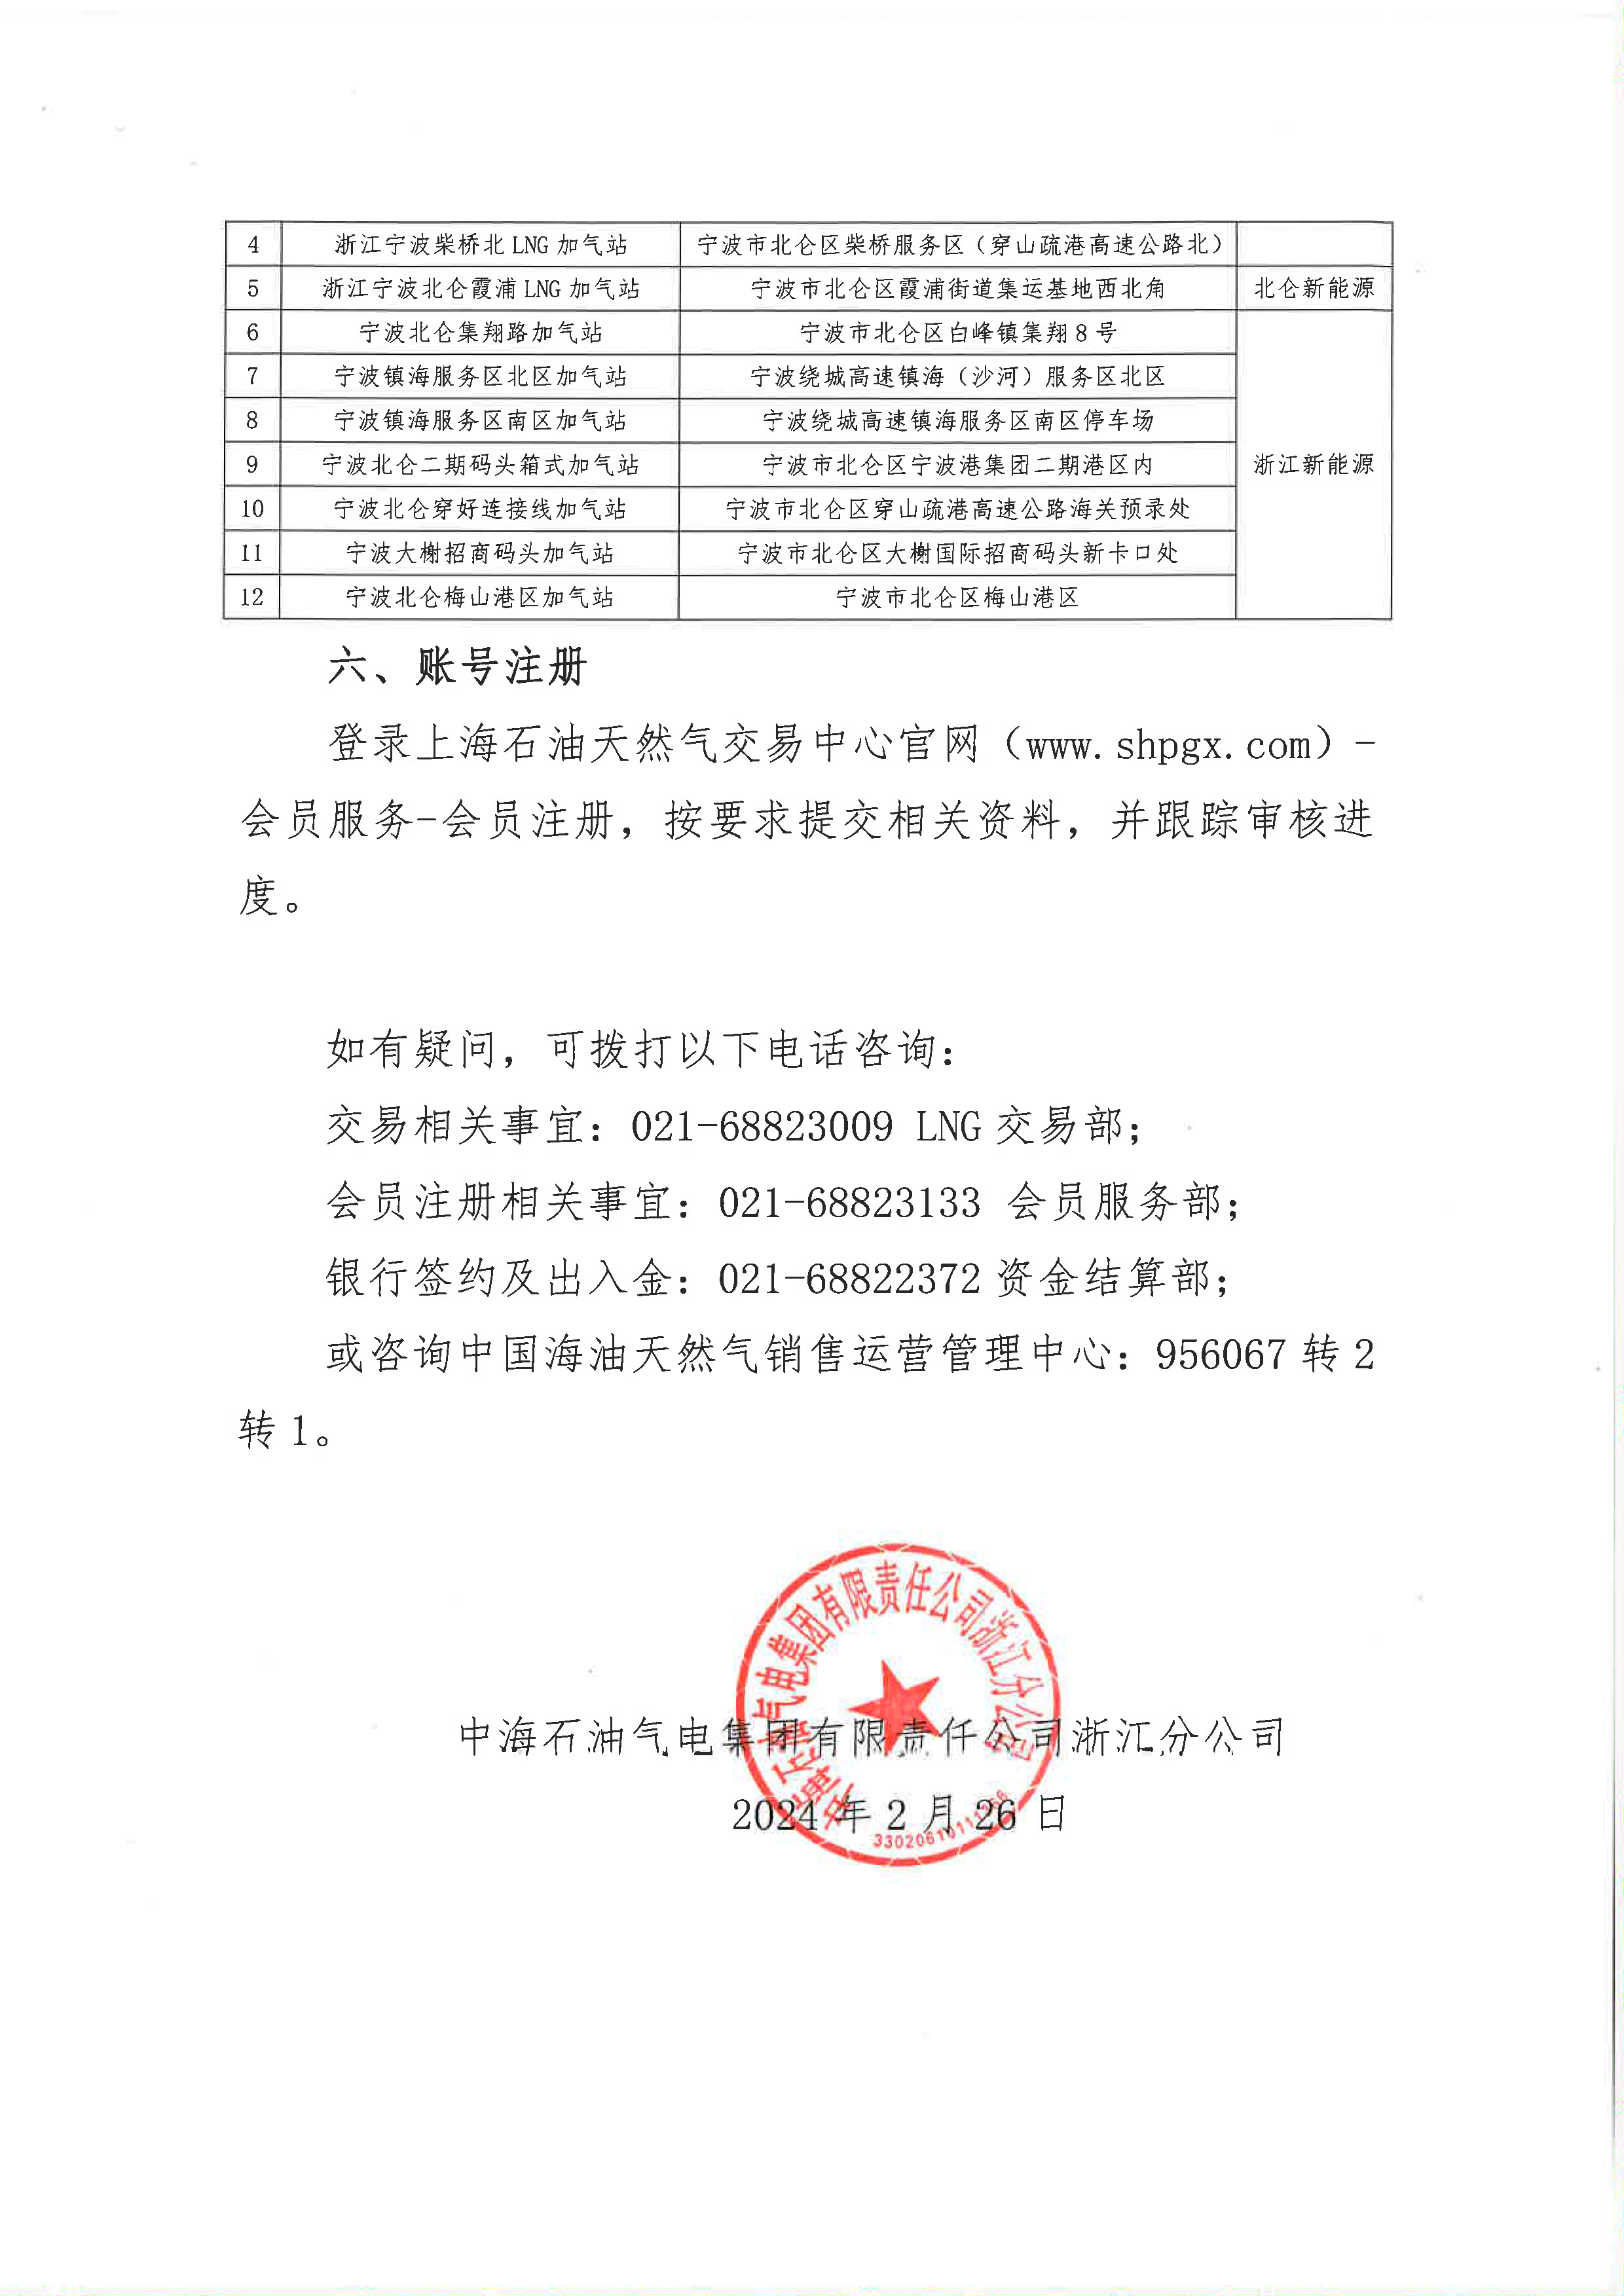 中海石油气电集团浙江分公司关于终端车辆加注合同线上签署的公告_页面_4.png